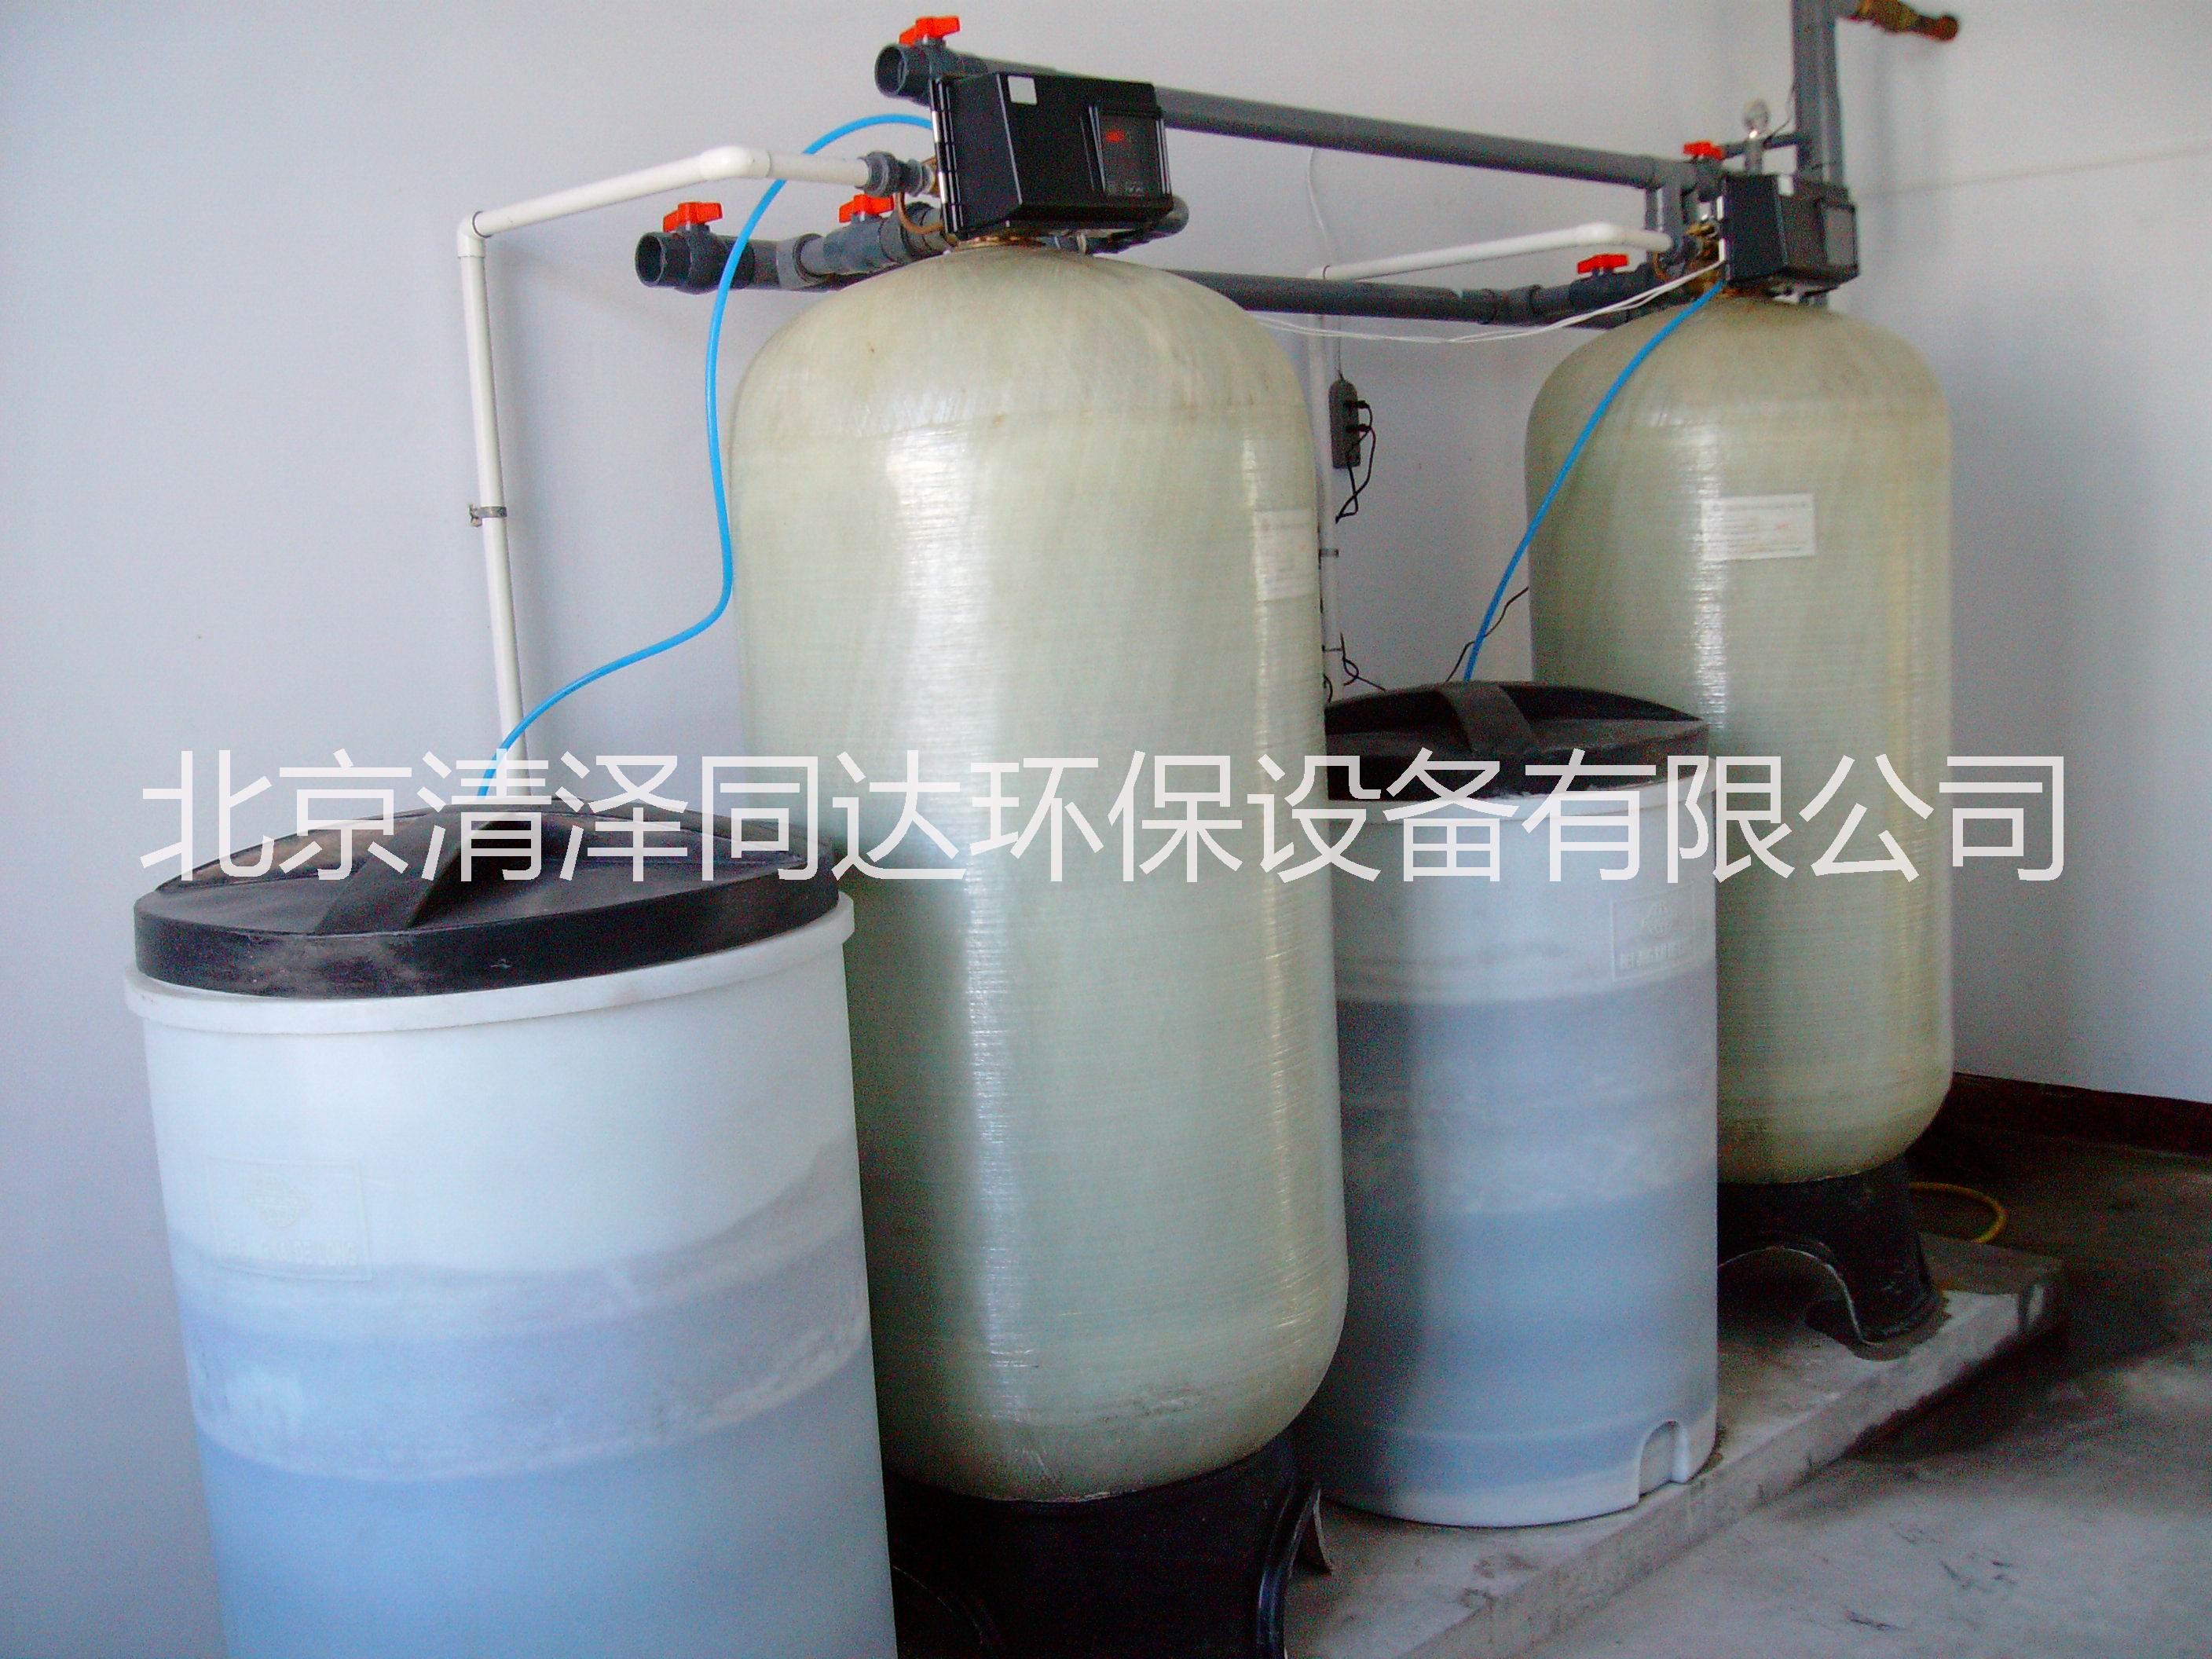 北京市软化水设备厂家软化水设备 锅炉软化水设备 空调软化水设备 离子交换设备 软化水